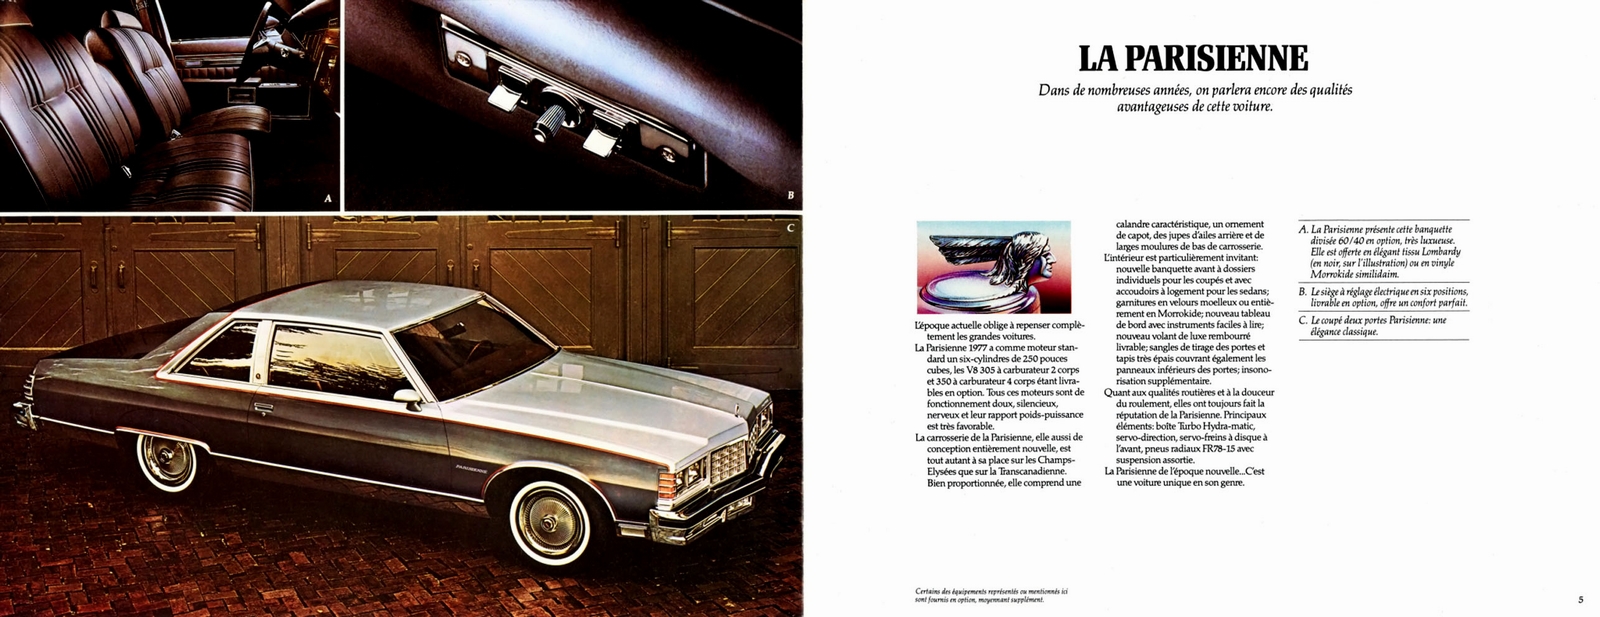 n_1977 Pontiac Full Size (Fr)-04-05.jpg